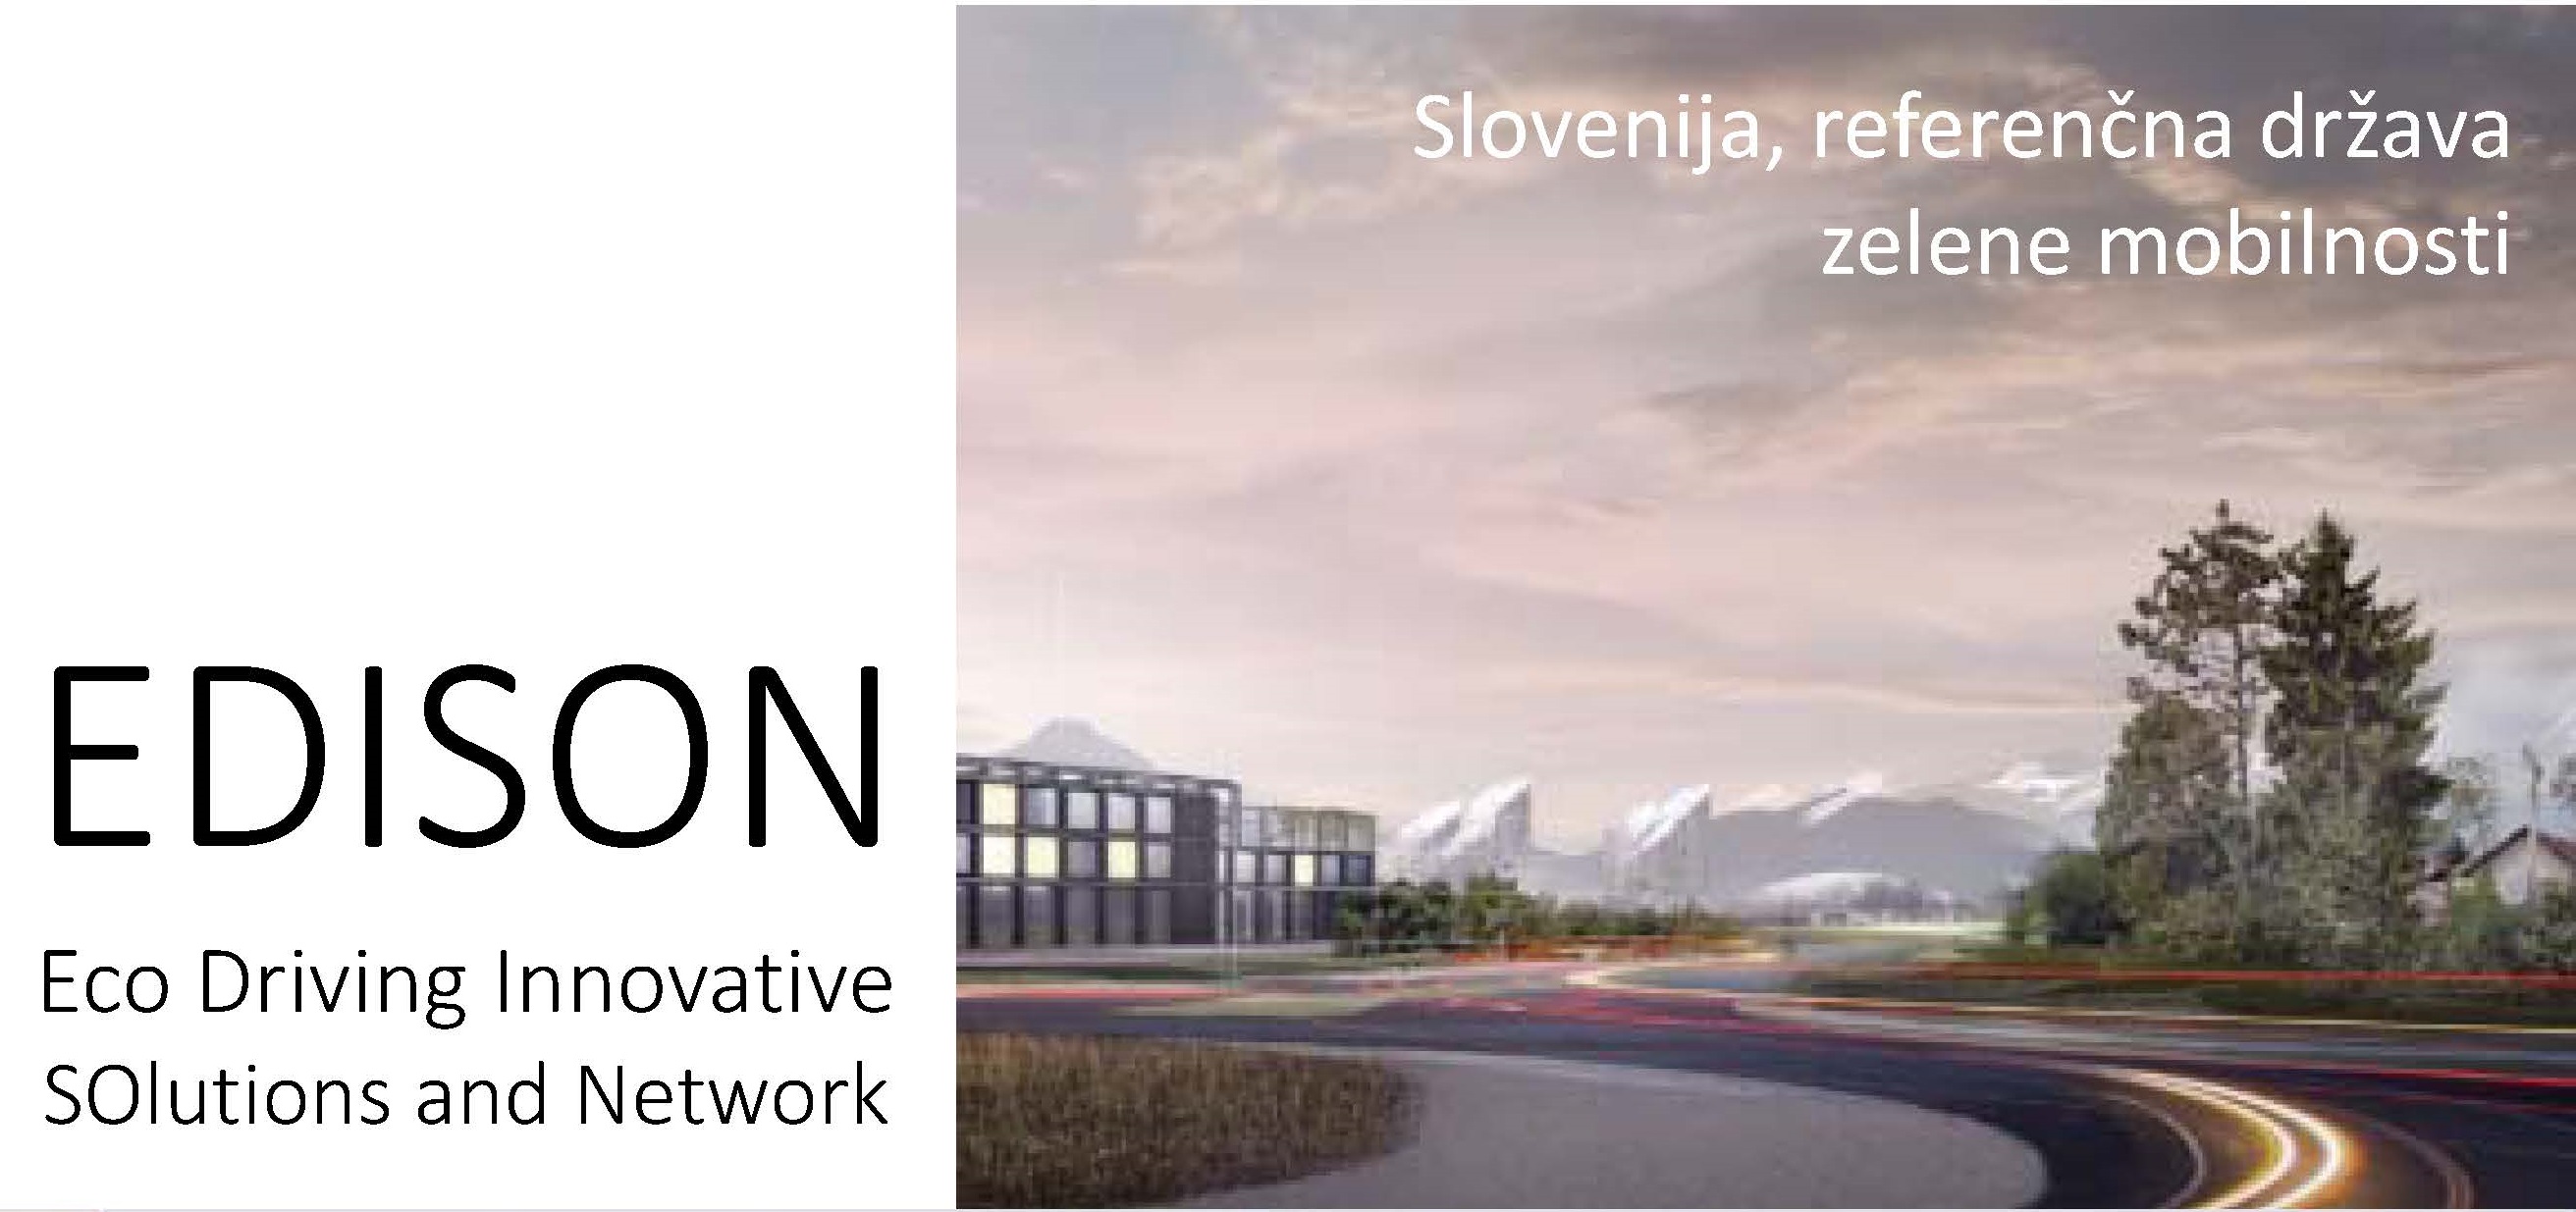 Projekt EDISON Slovenija - referenčna država zelene mobilnosti